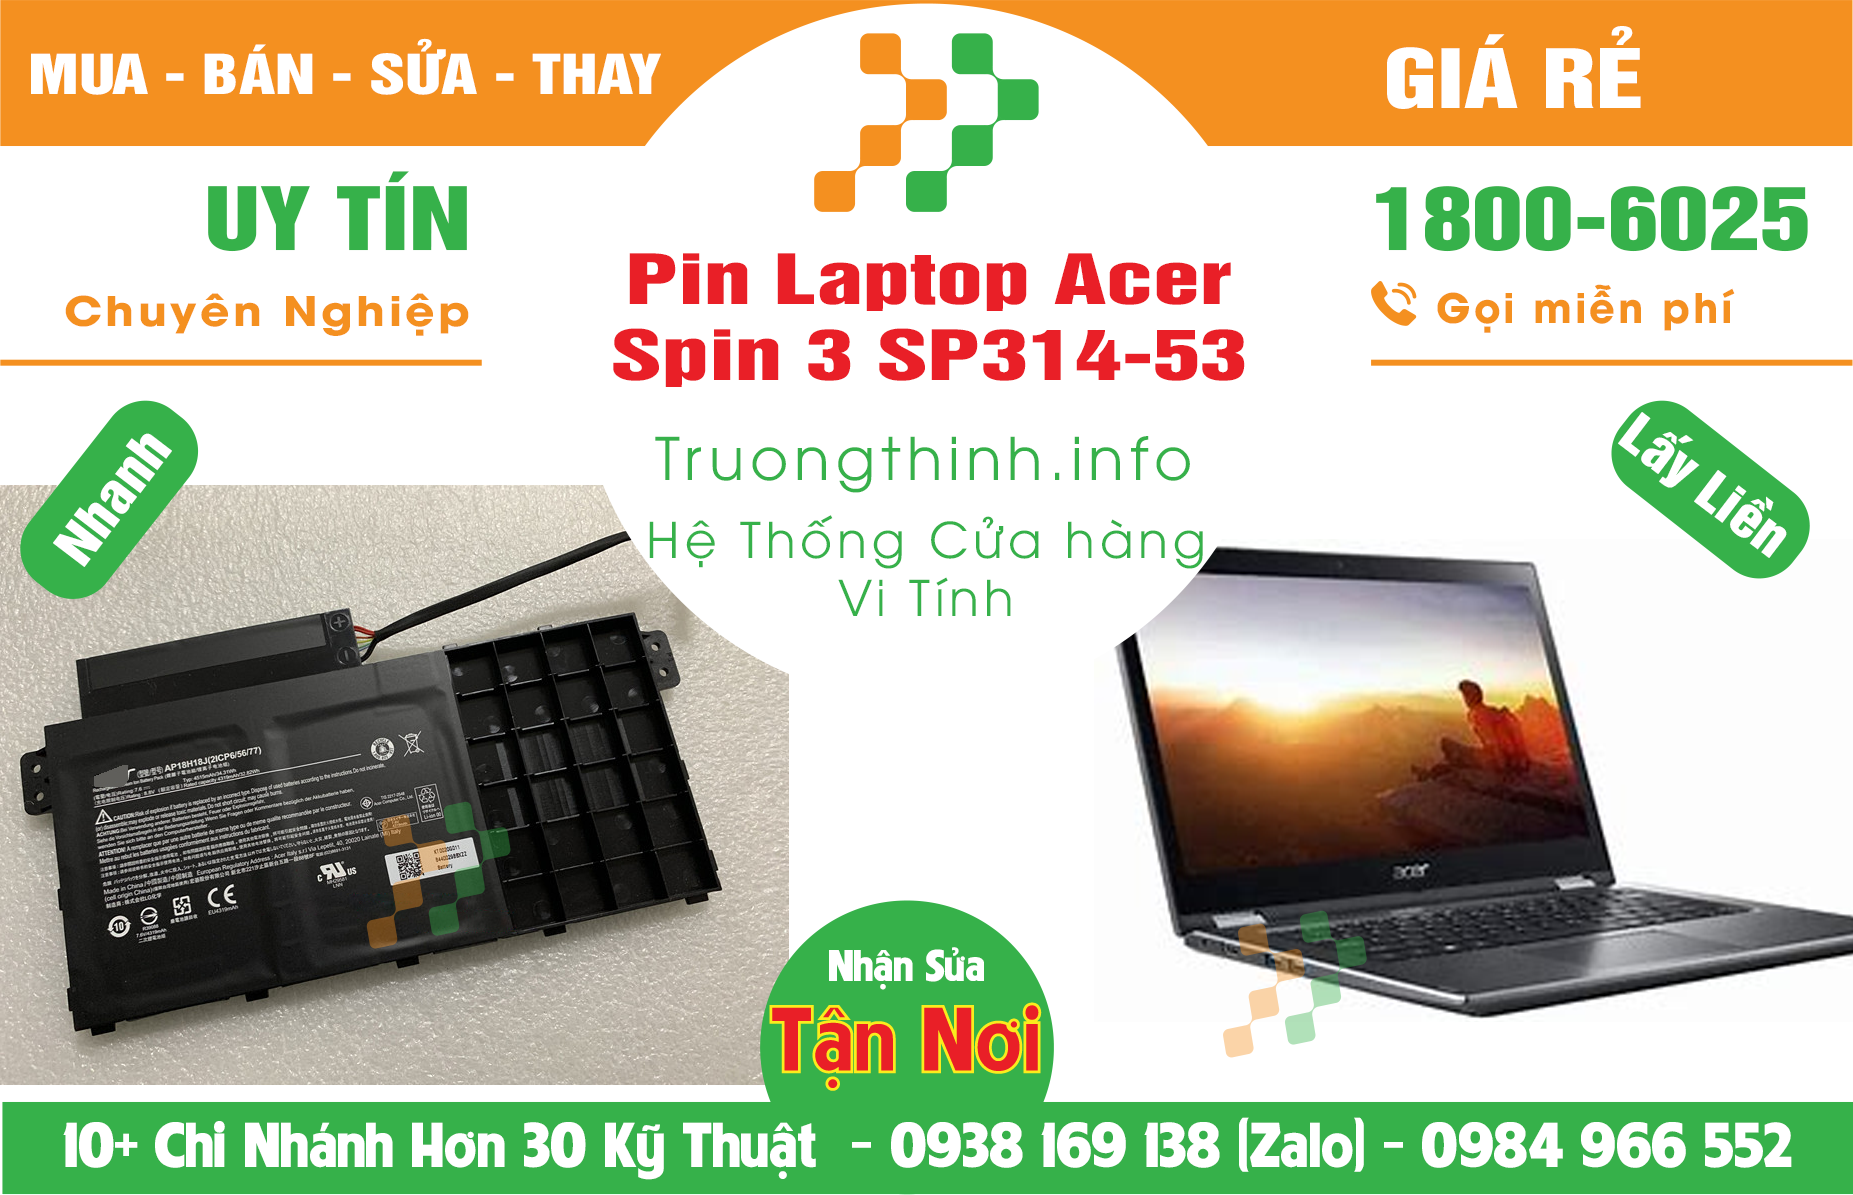 Mua Bán Pin Laptop Acer Spin 3 SP314-53 Giá Rẻ | Máy Tính Trường Thịnh Giá Rẻ